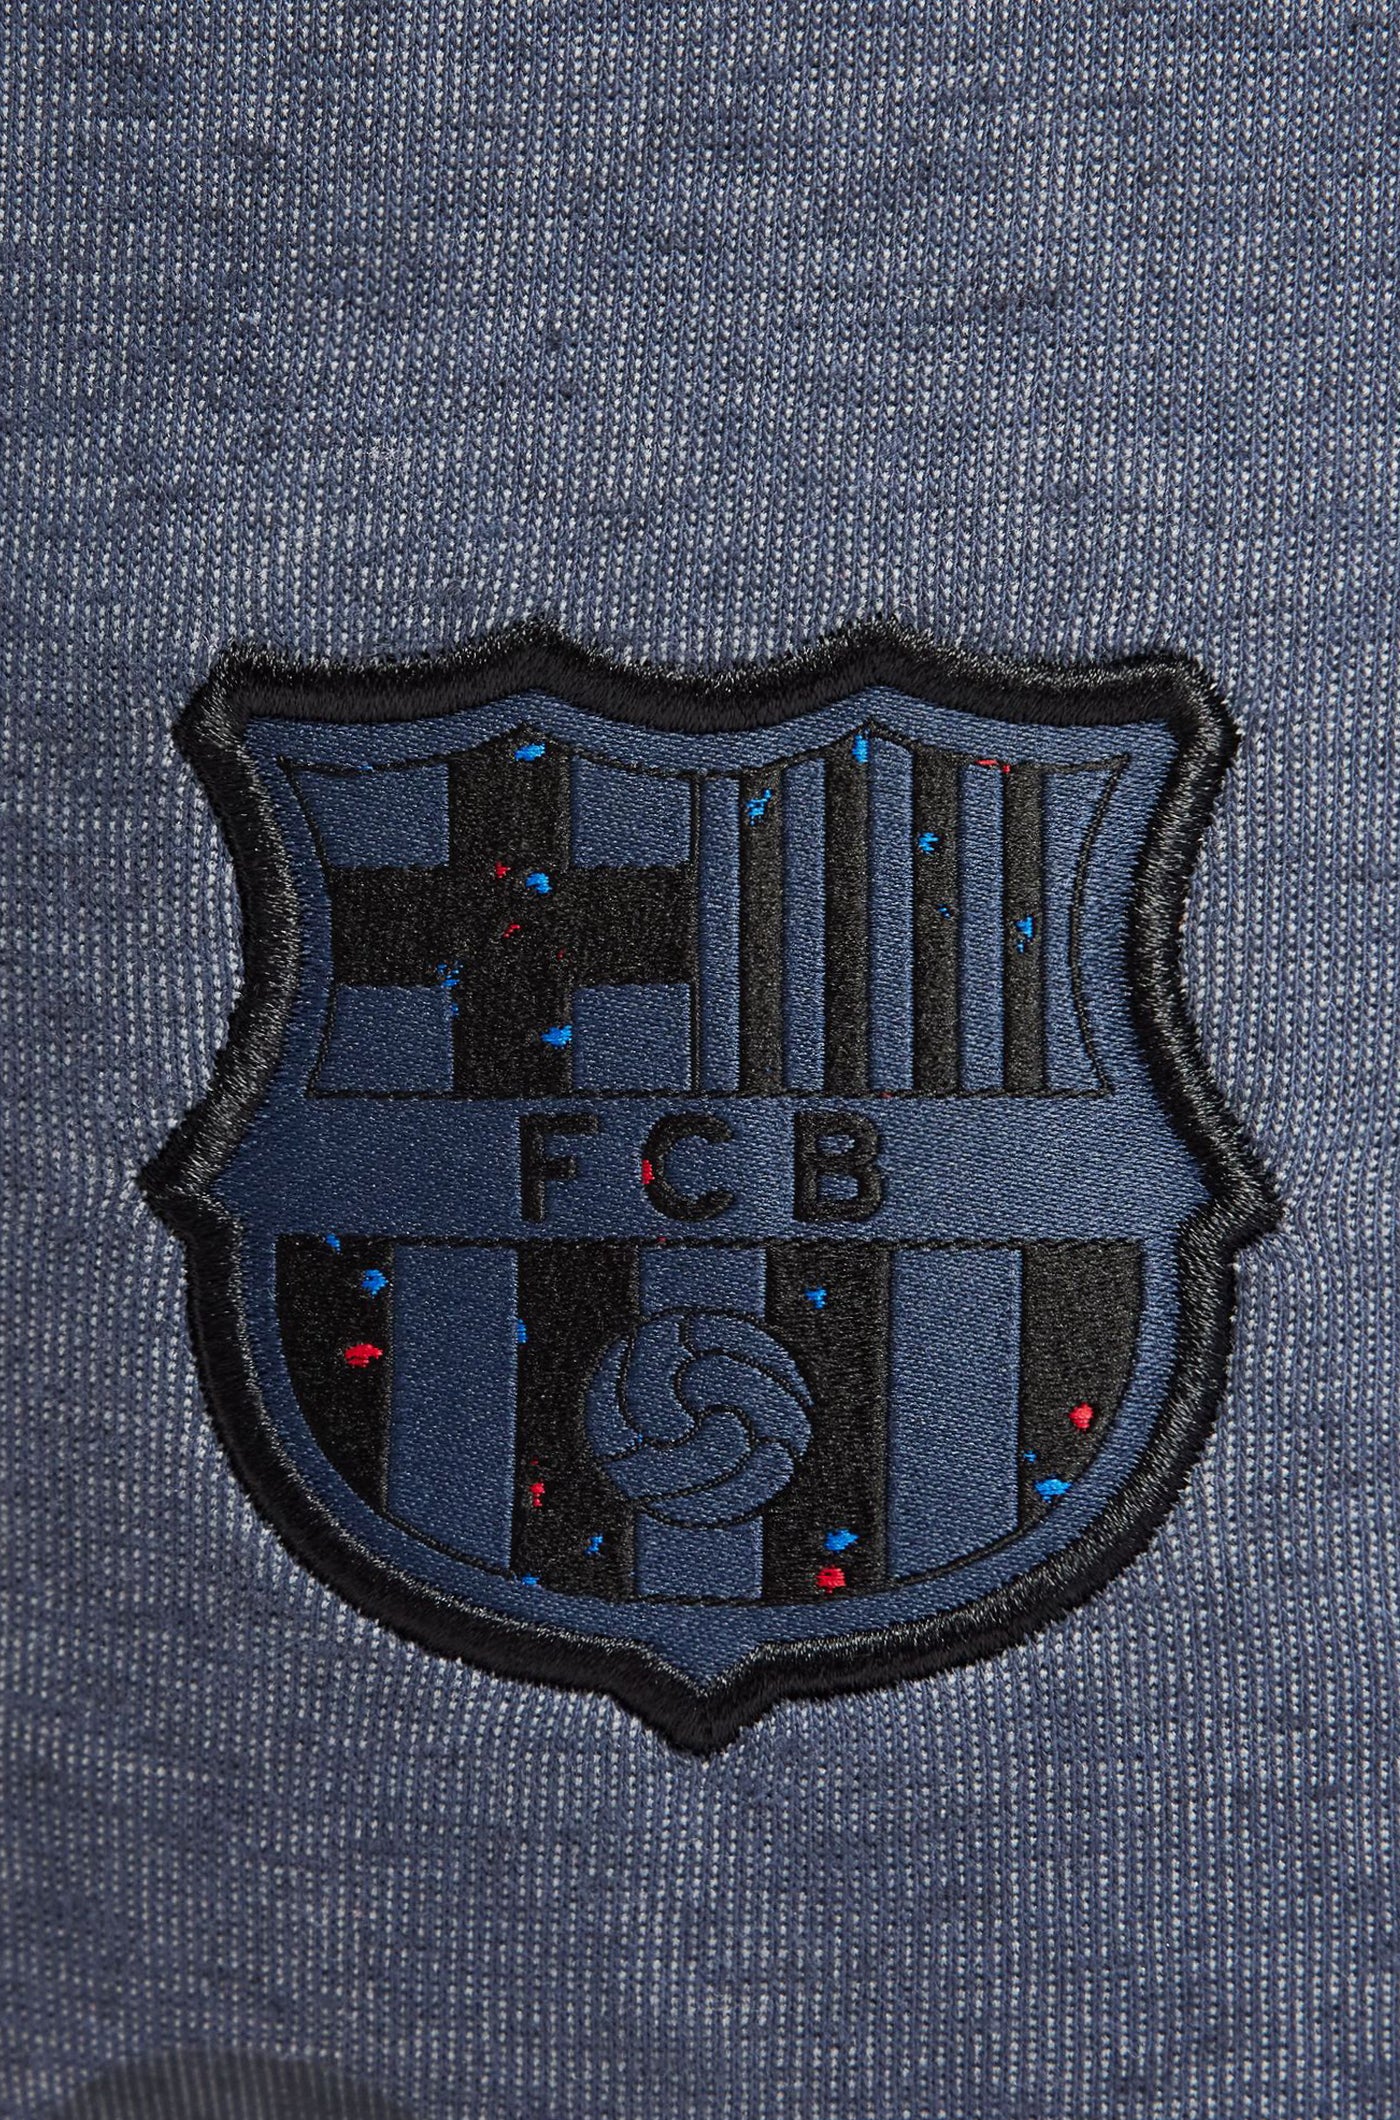 Pants Tech Blue Barça Nike - Women – Barça Official Store Spotify Camp Nou